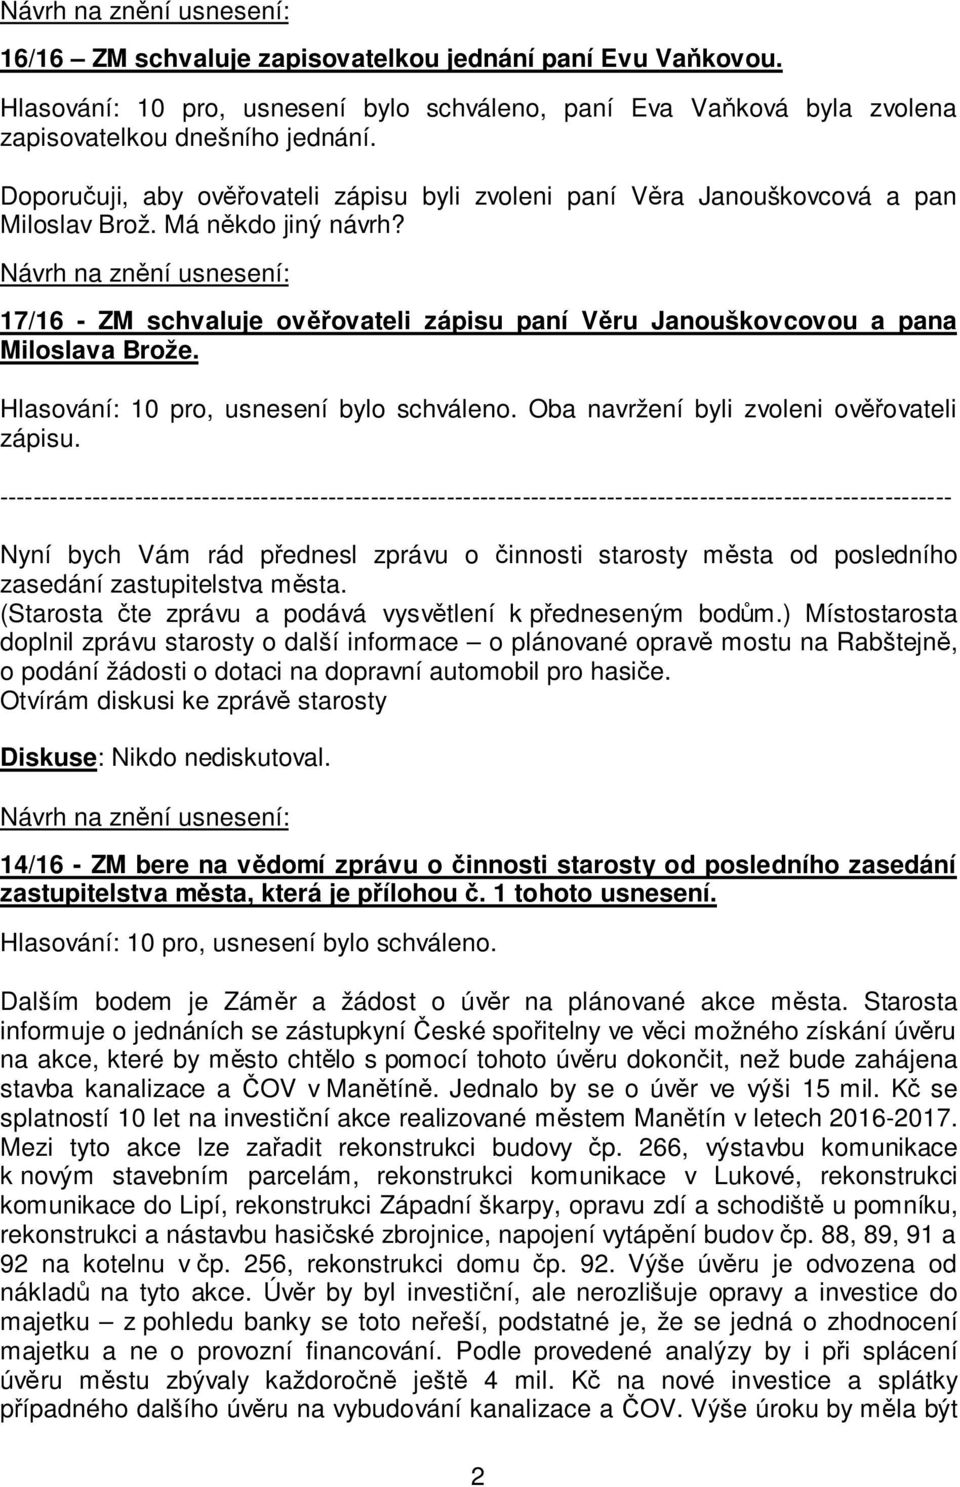 17/16 - ZM schvaluje ověřovateli zápisu paní Věru Janouškovcovou a pana Miloslava Brože. Oba navržení byli zvoleni ověřovateli zápisu.